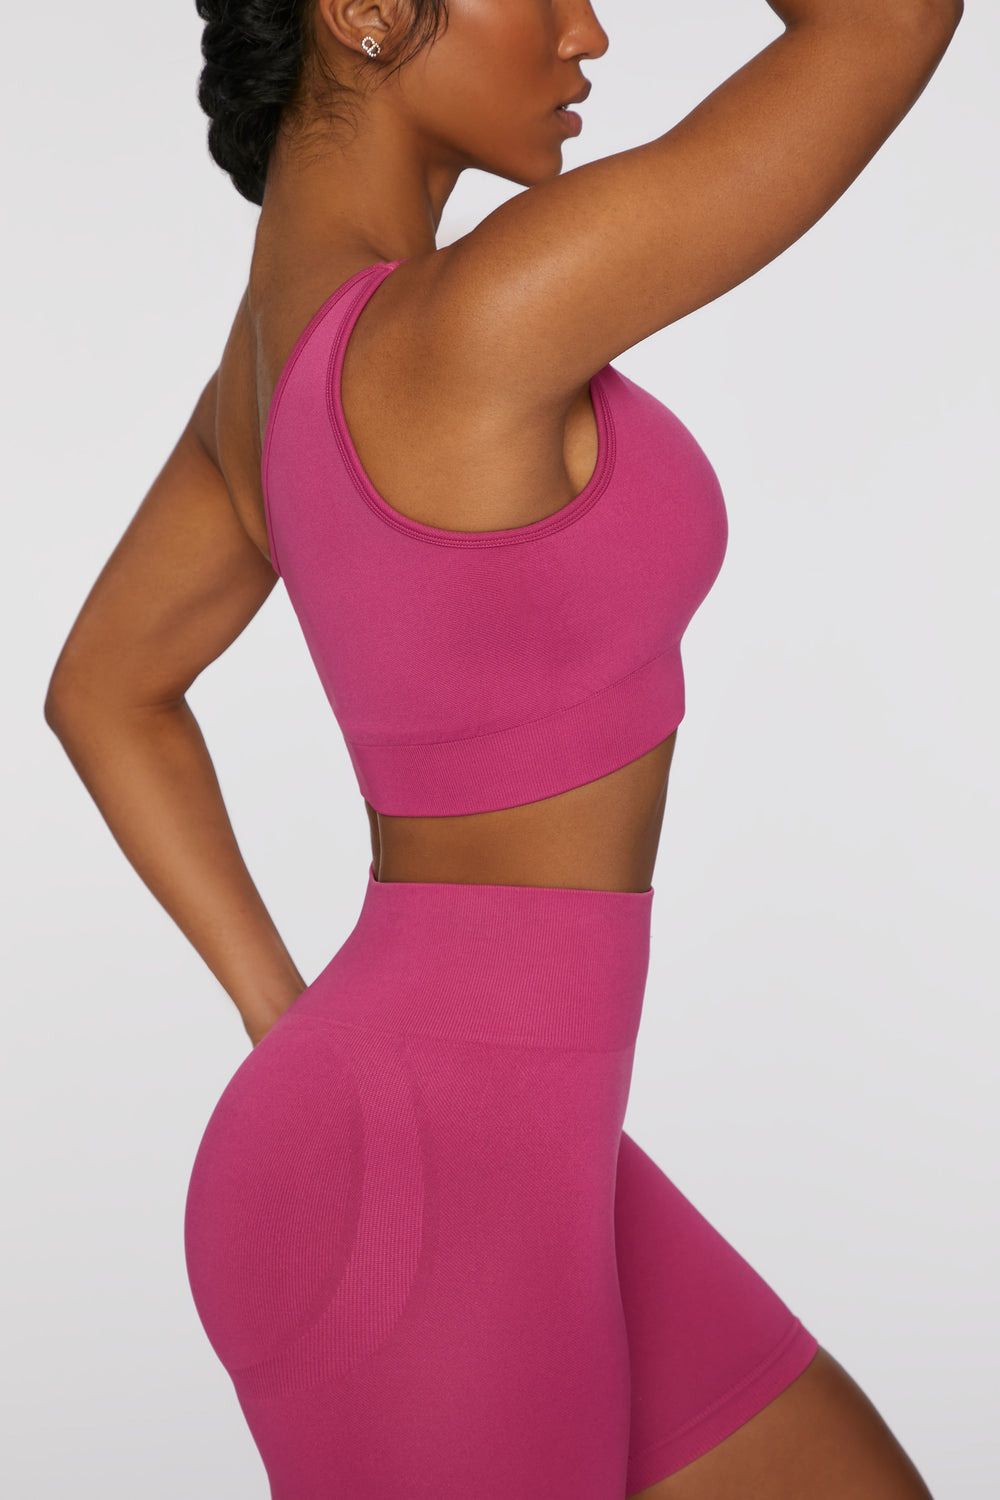 pink bo+tee gym crop top 🤍 ~ worn like 4 times - - Depop